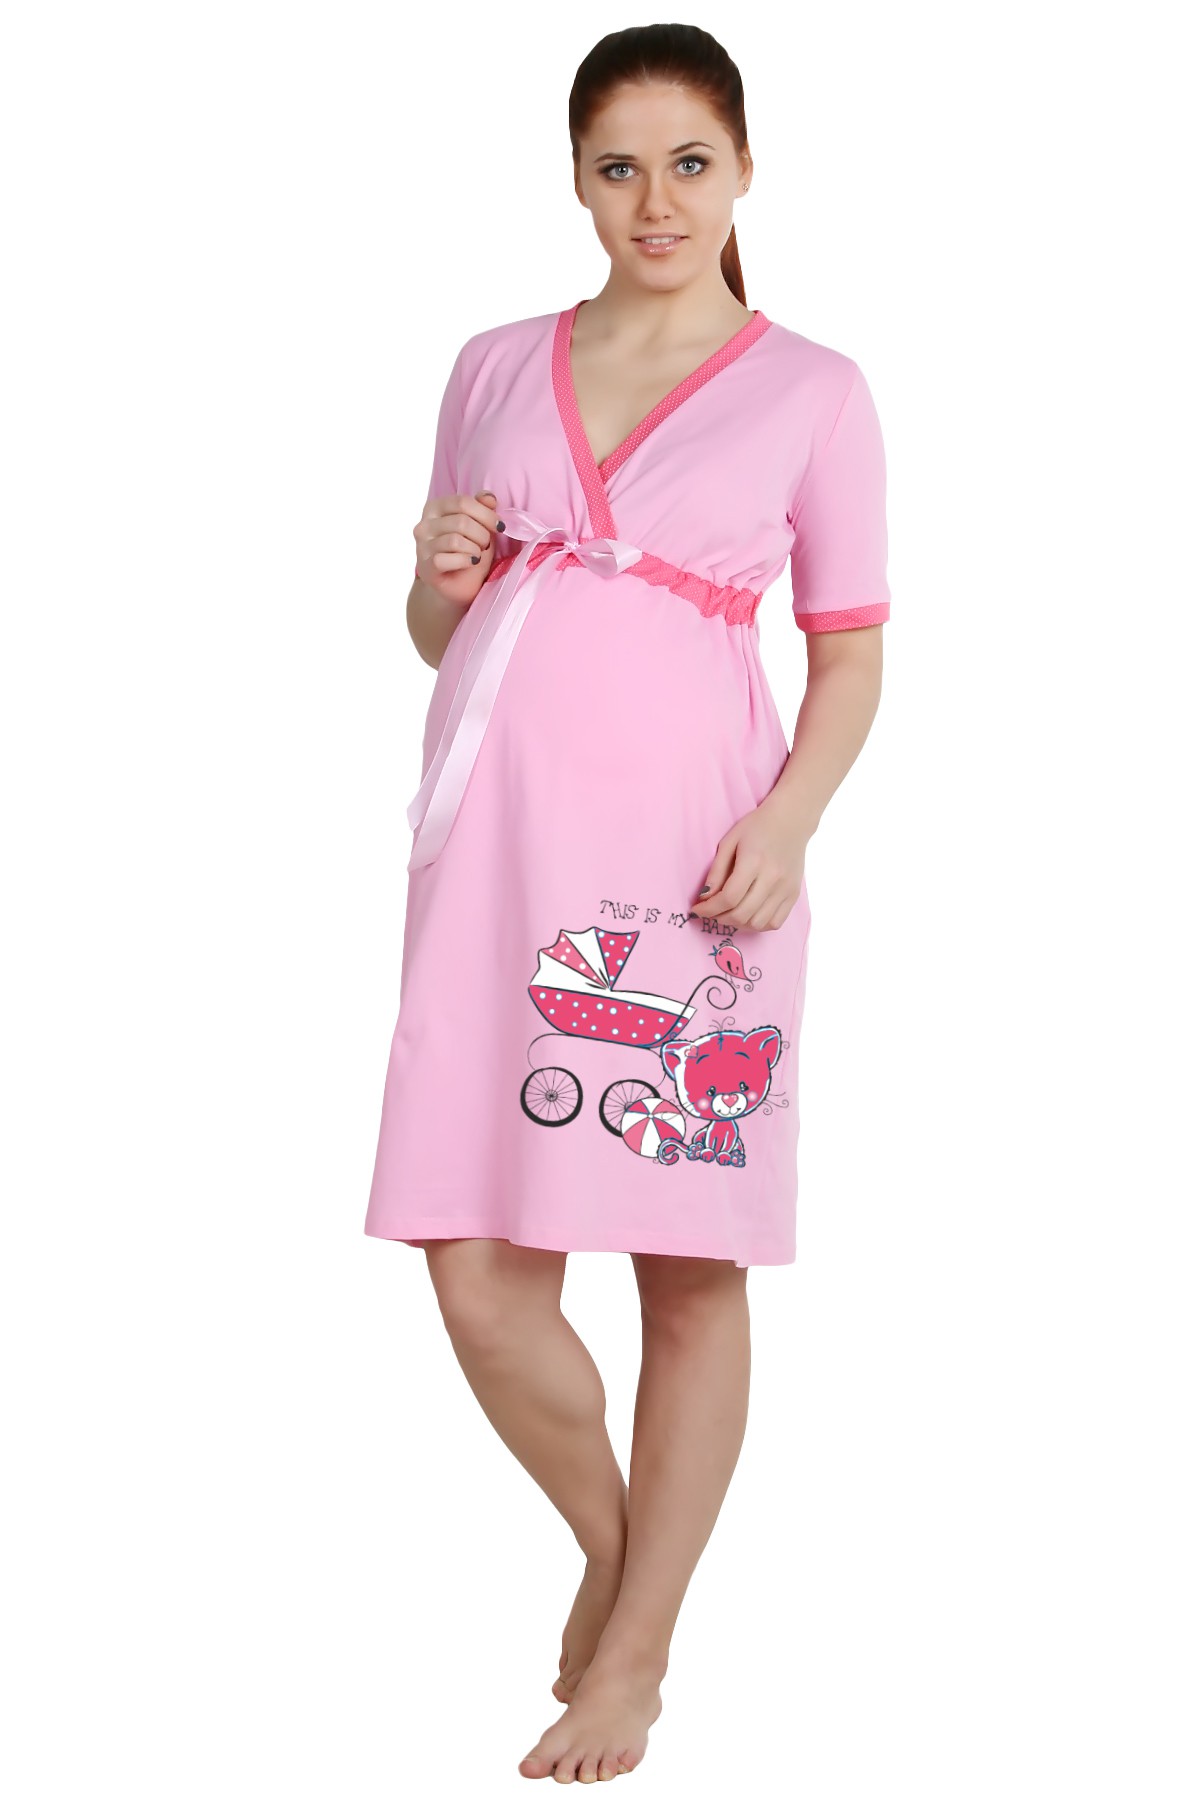 Ночная сорочка Queenie (56), размер: {}{}, цвет: розовый otj412919 Ночная сорочка Queenie (56) - фото 1